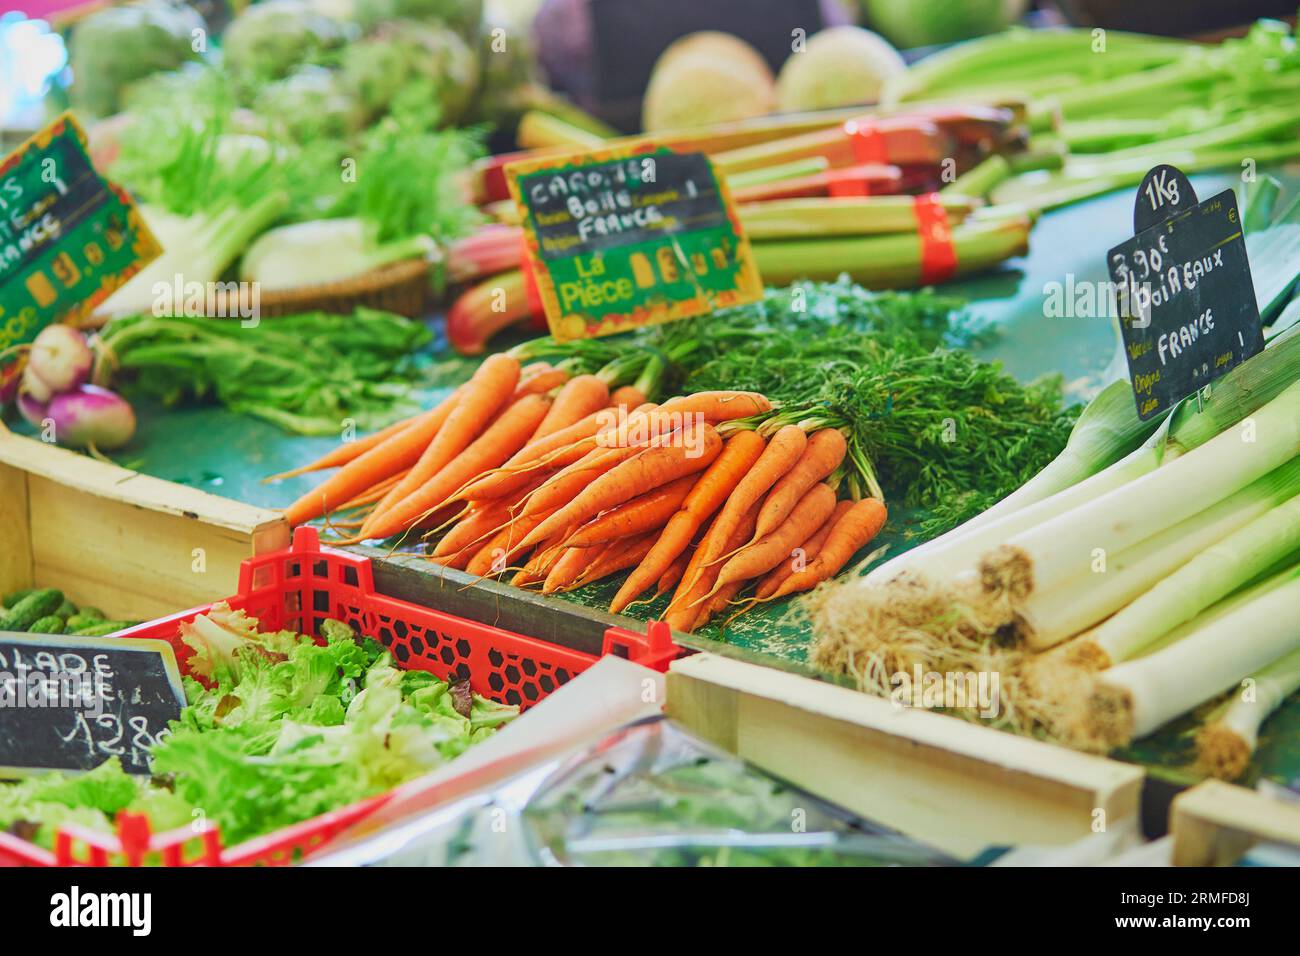 Ortaggi biologici freschi e sani sul mercato agricolo francese. Le parole sulle etichette dei prezzi sono scritte in francese Foto Stock